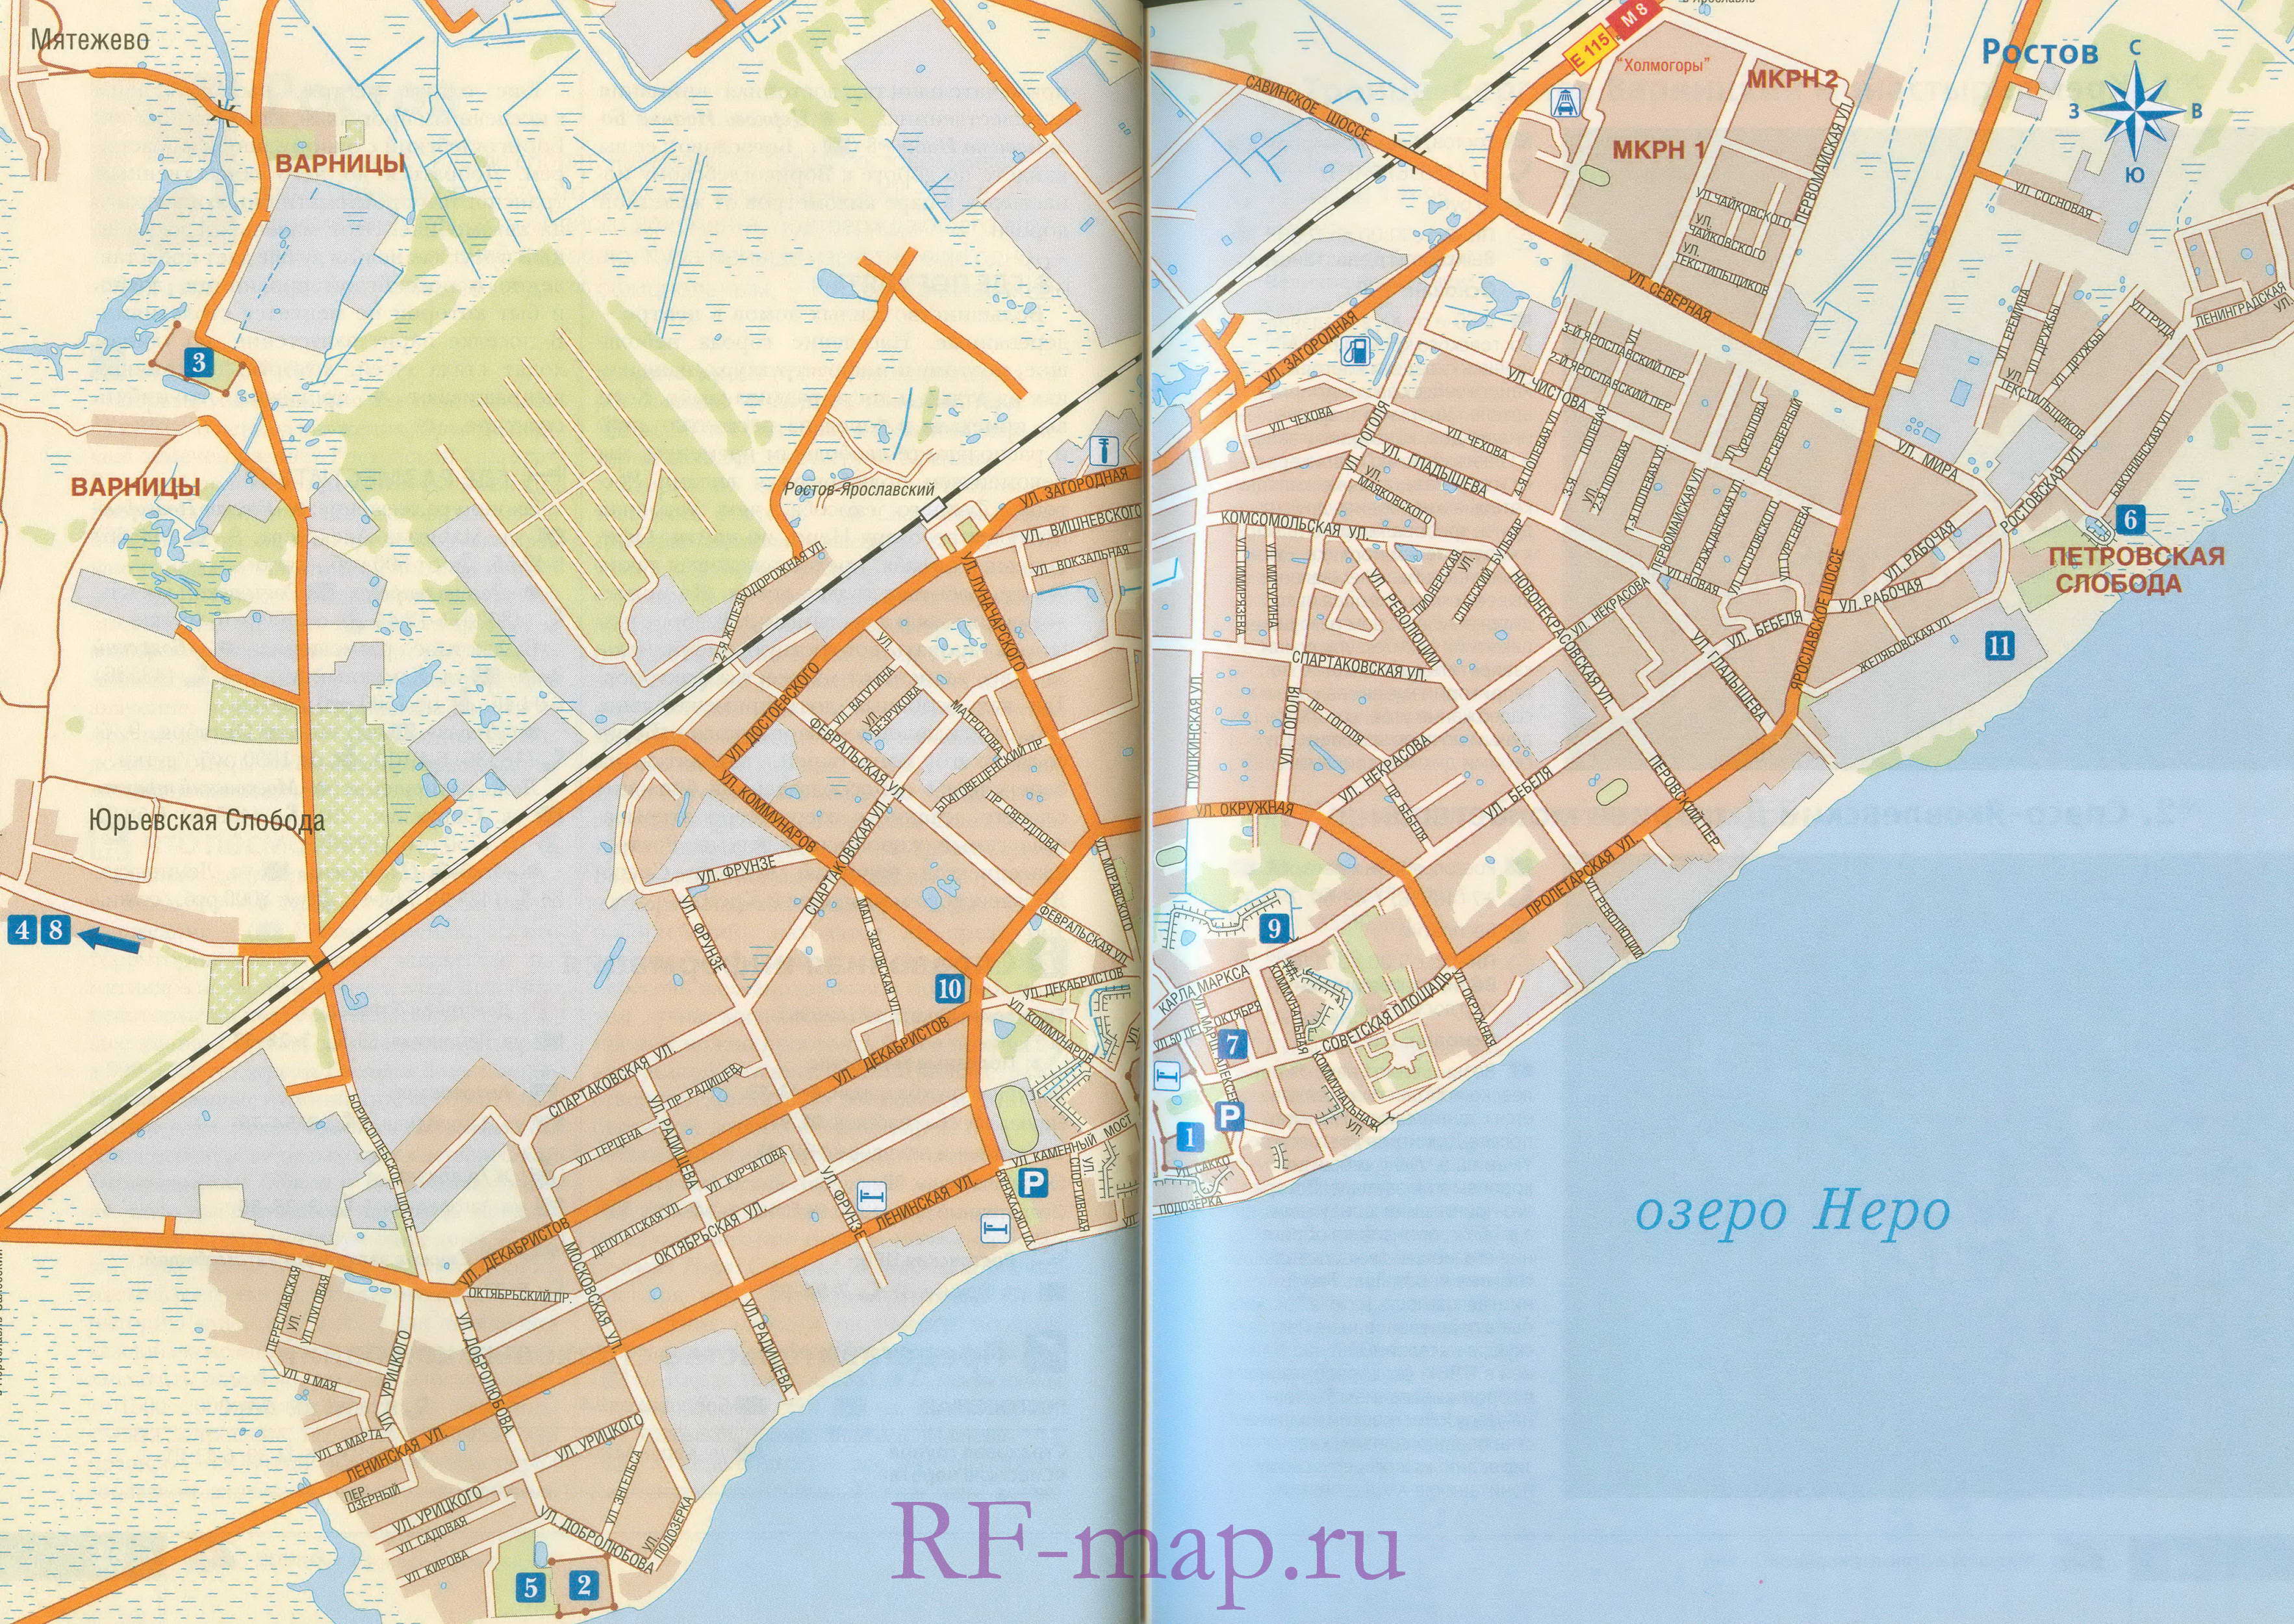 Карта схема города Ростов Великий. Схема транзитного проезда через Ростов Великий, A0 - 